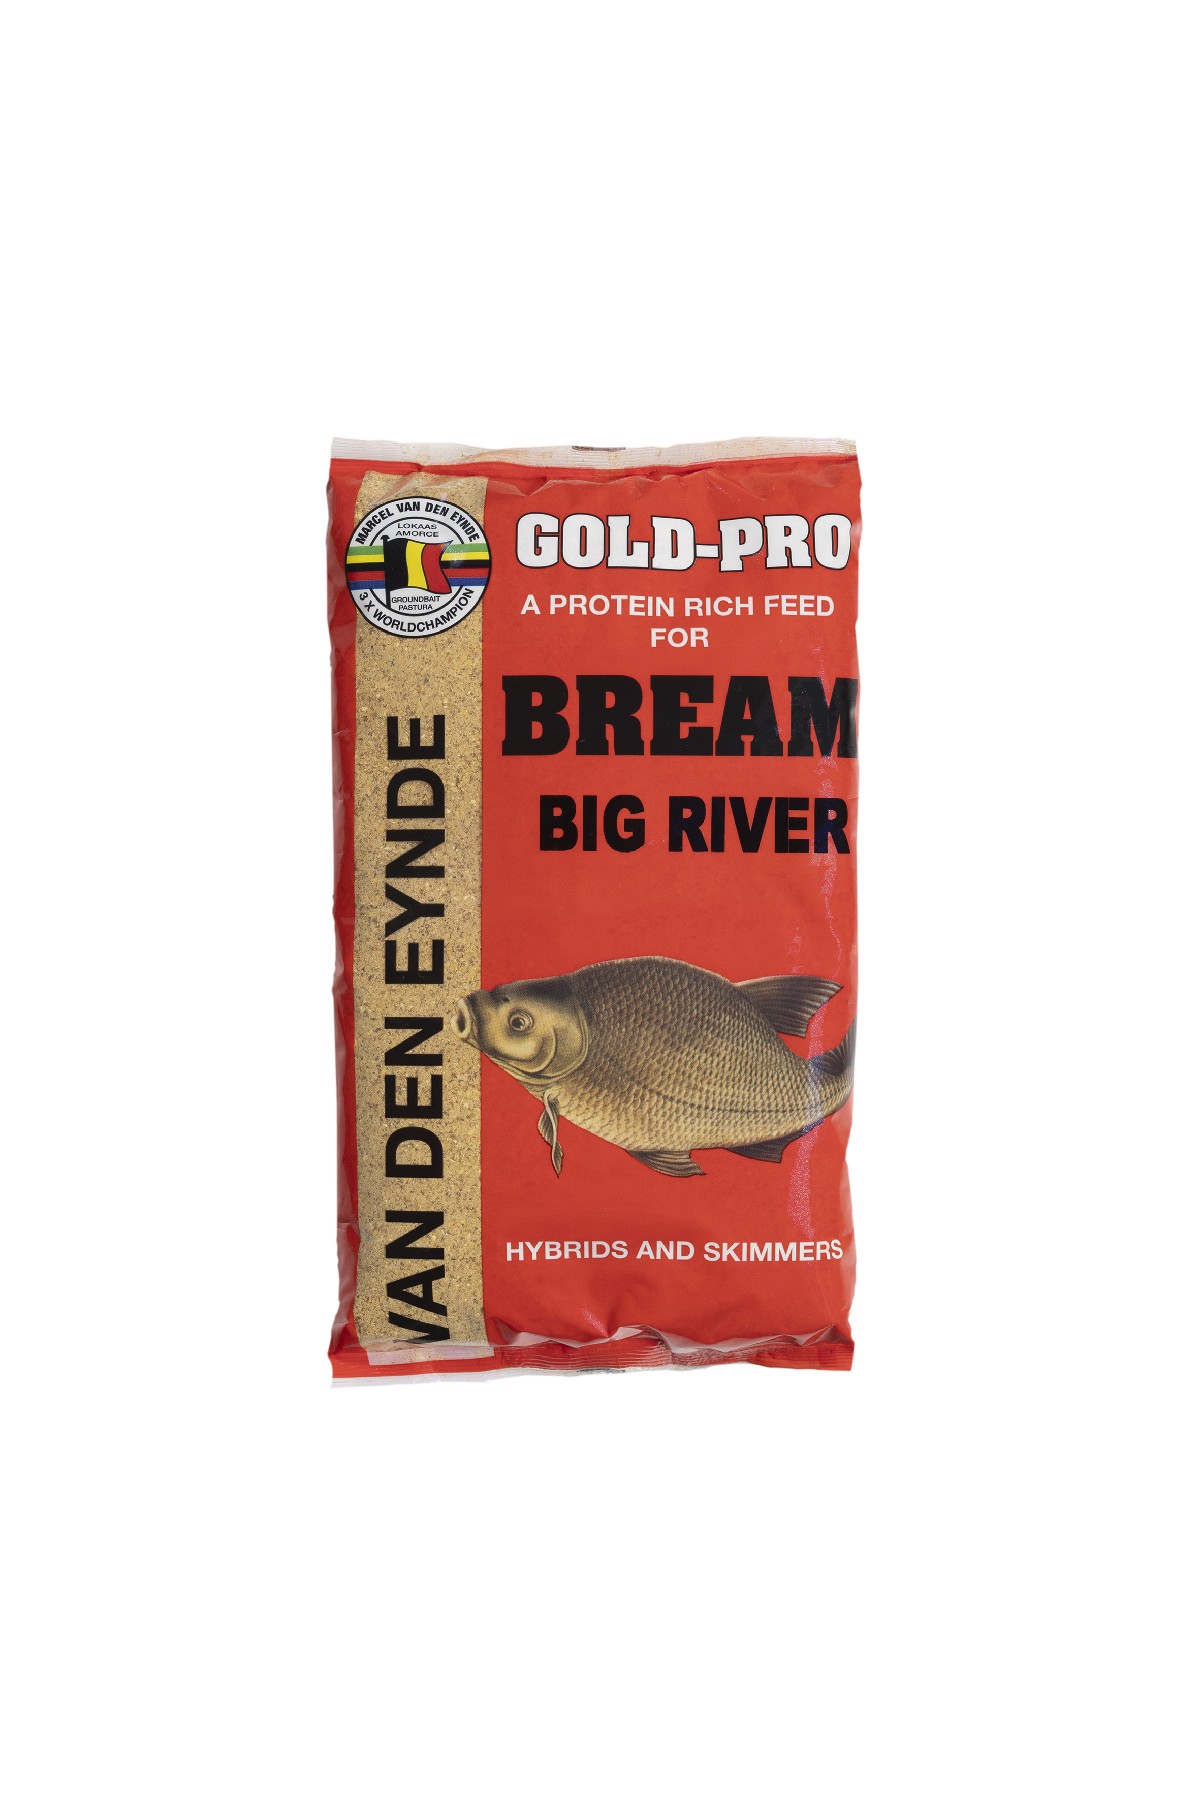 vd Eynde Gold-Pro Big River 1 kg